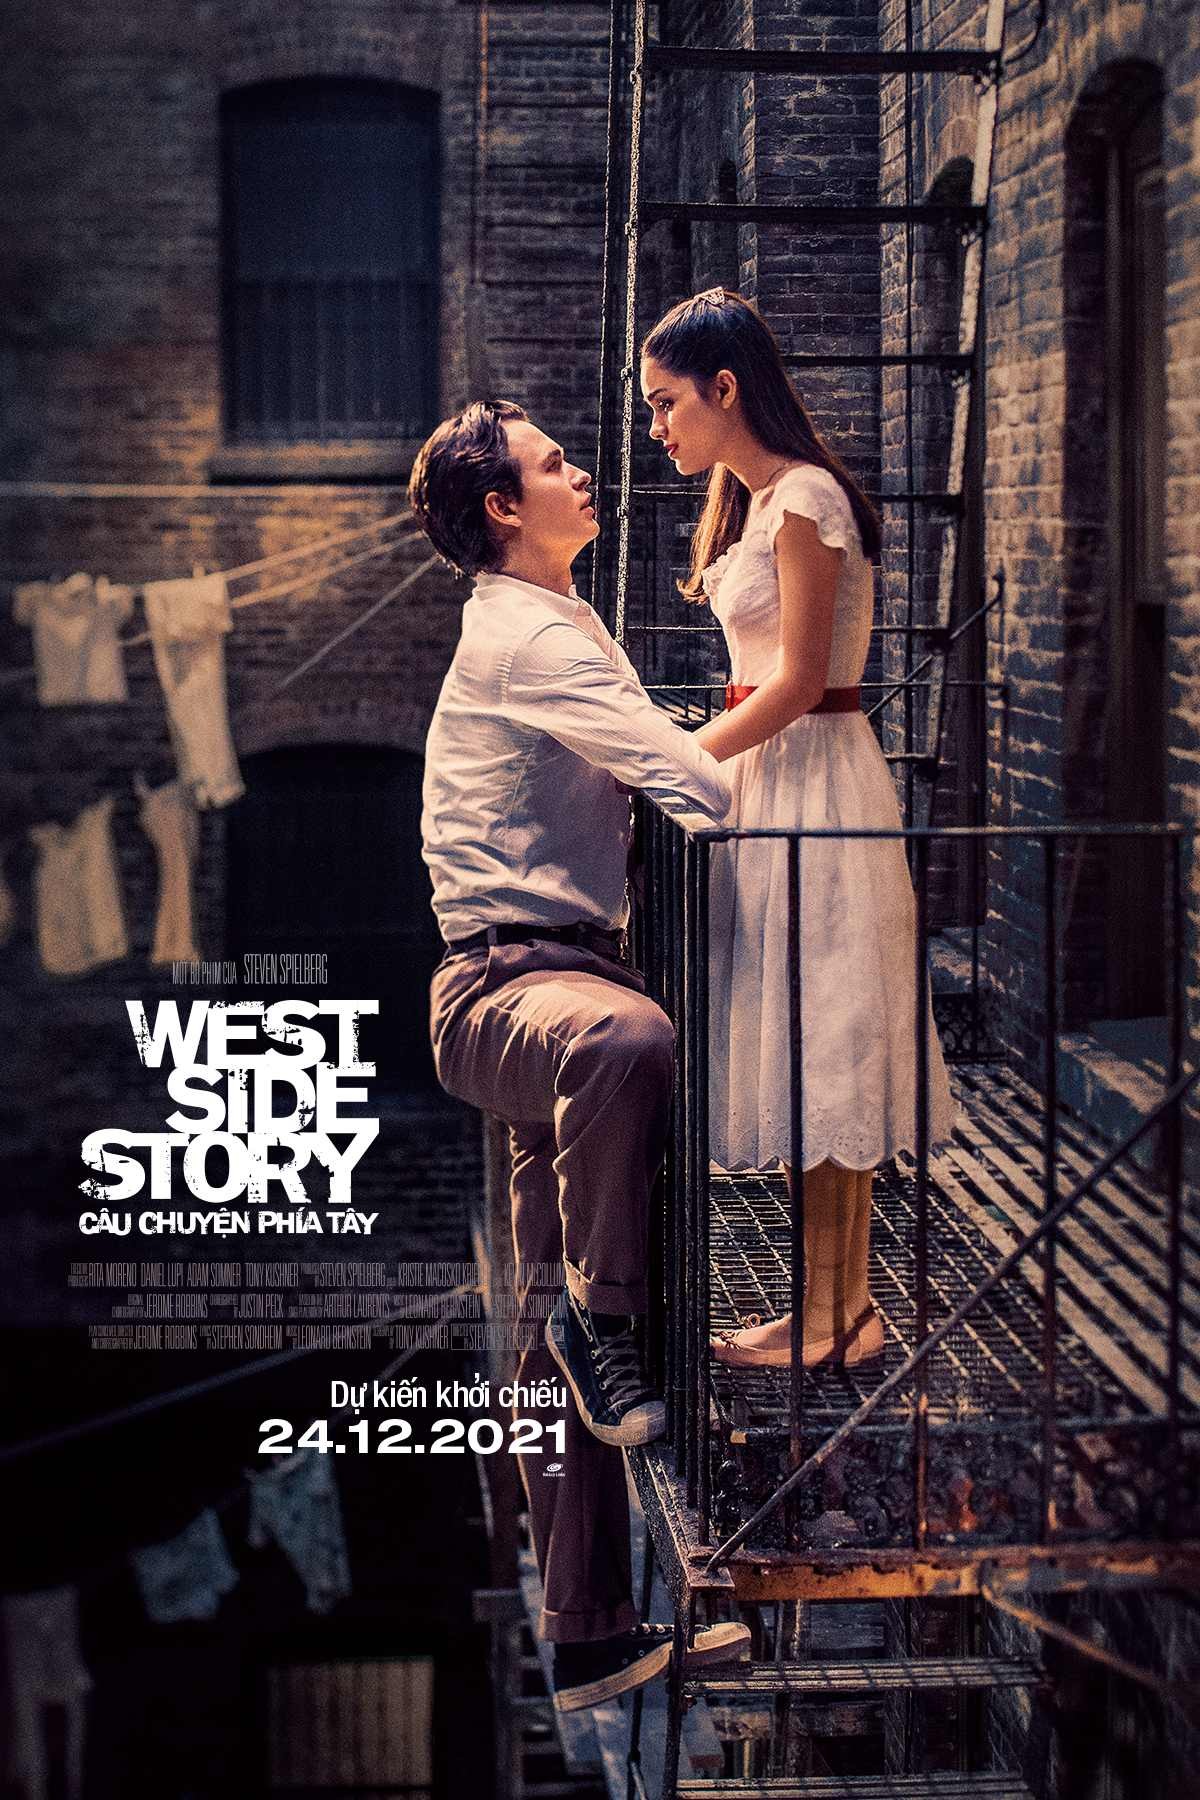 Câu Chuyện Phía Tây – West Side Story